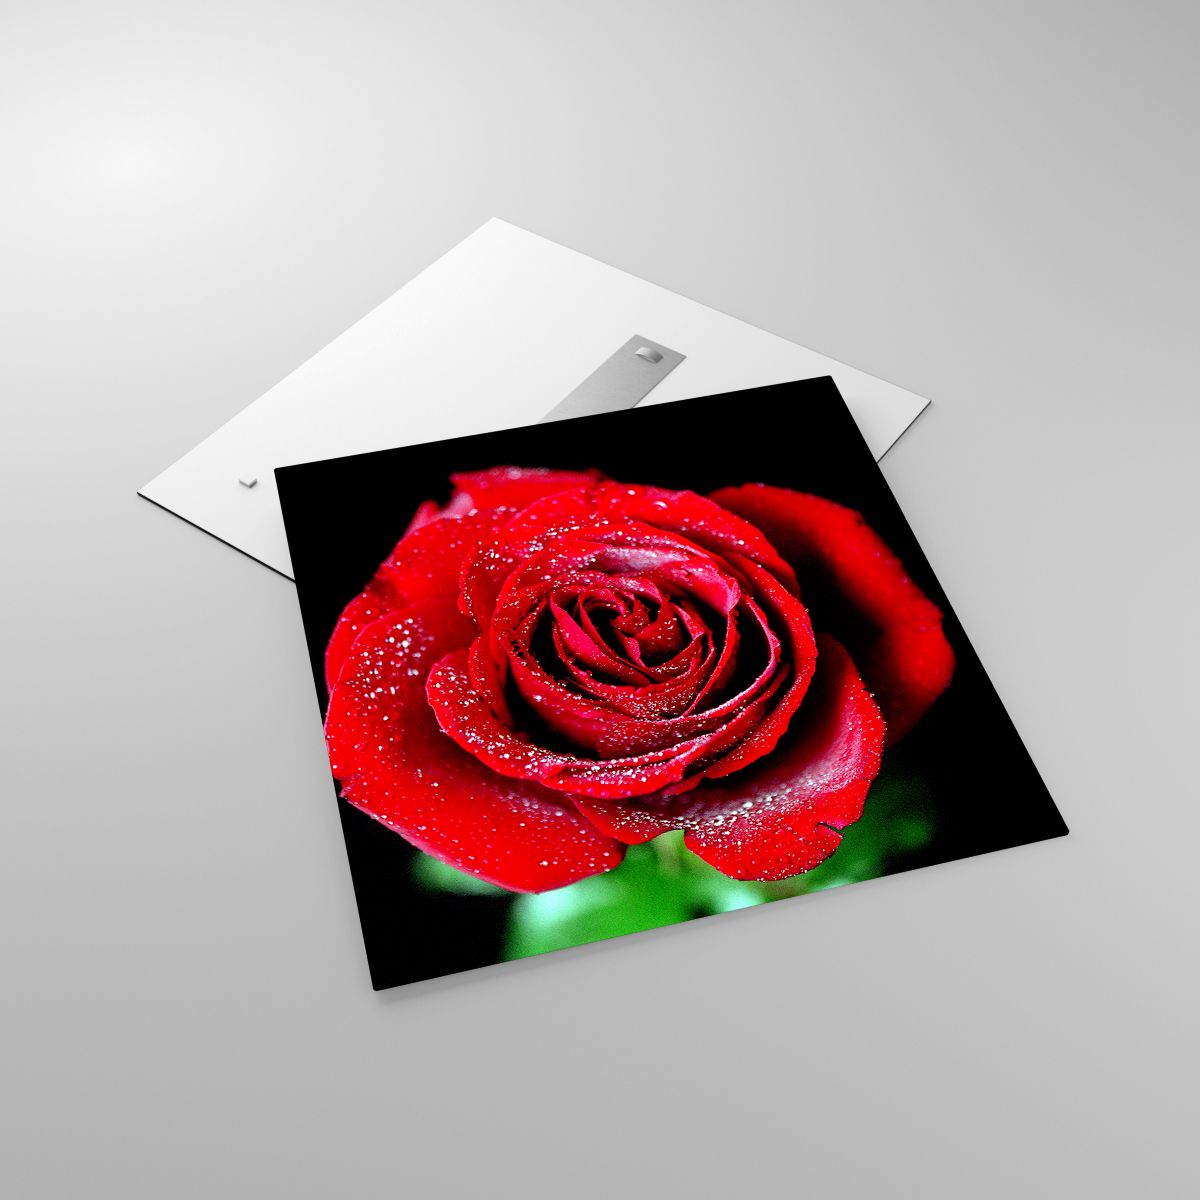 Glasbild Blumen, Glasbild Rote Rose, Glasbild Rosenblätter, Glasbild Liebe, Glasbild Wassertropfen